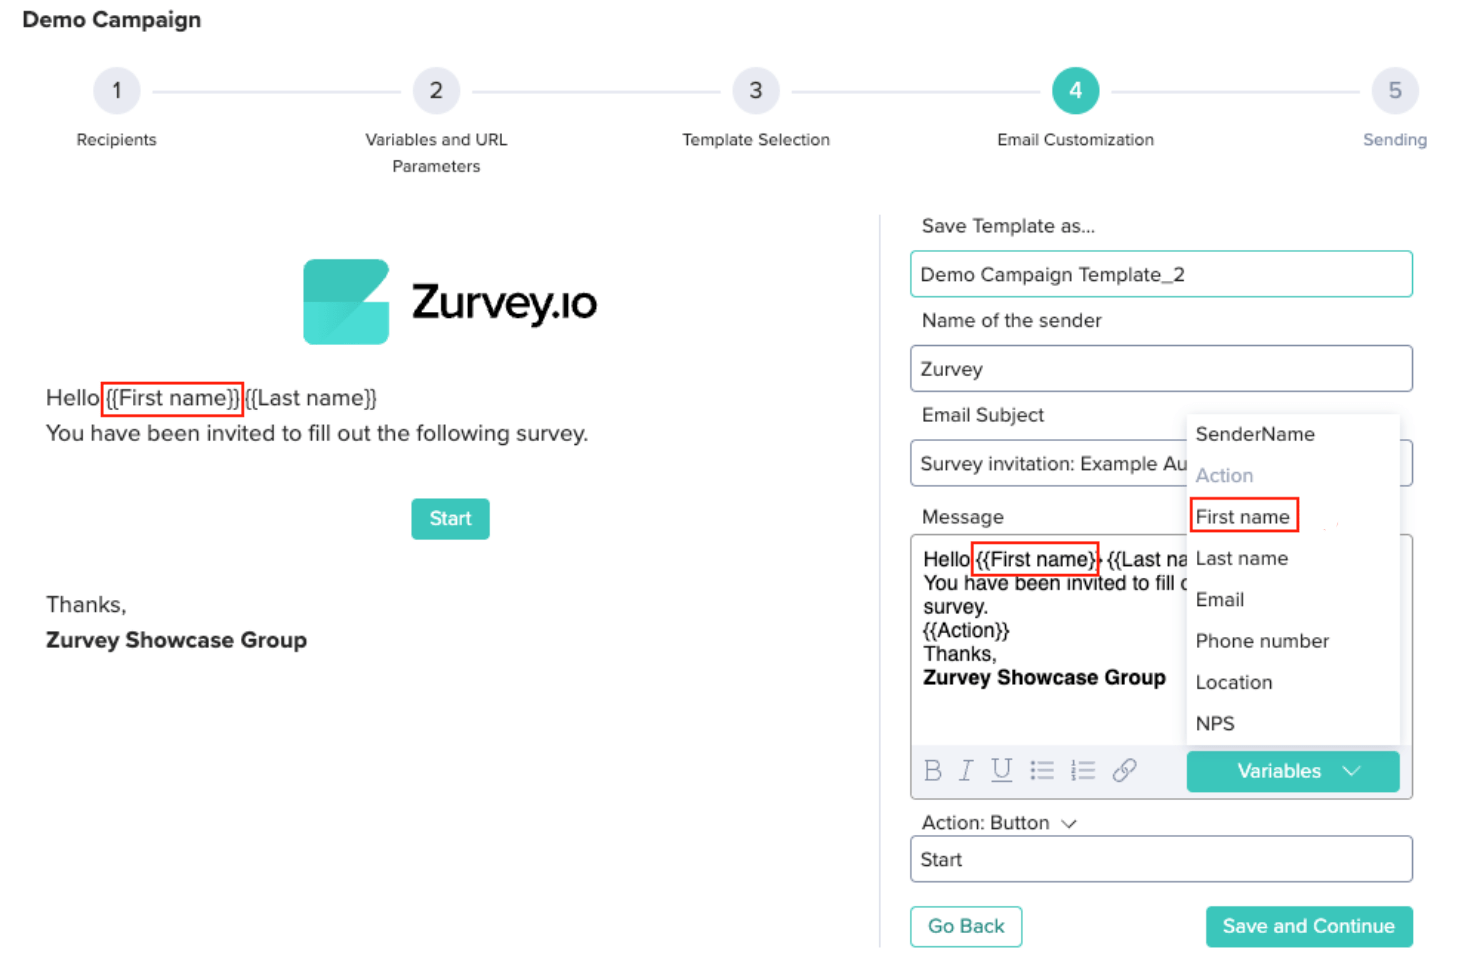 email-body-customization-zurvey-CX